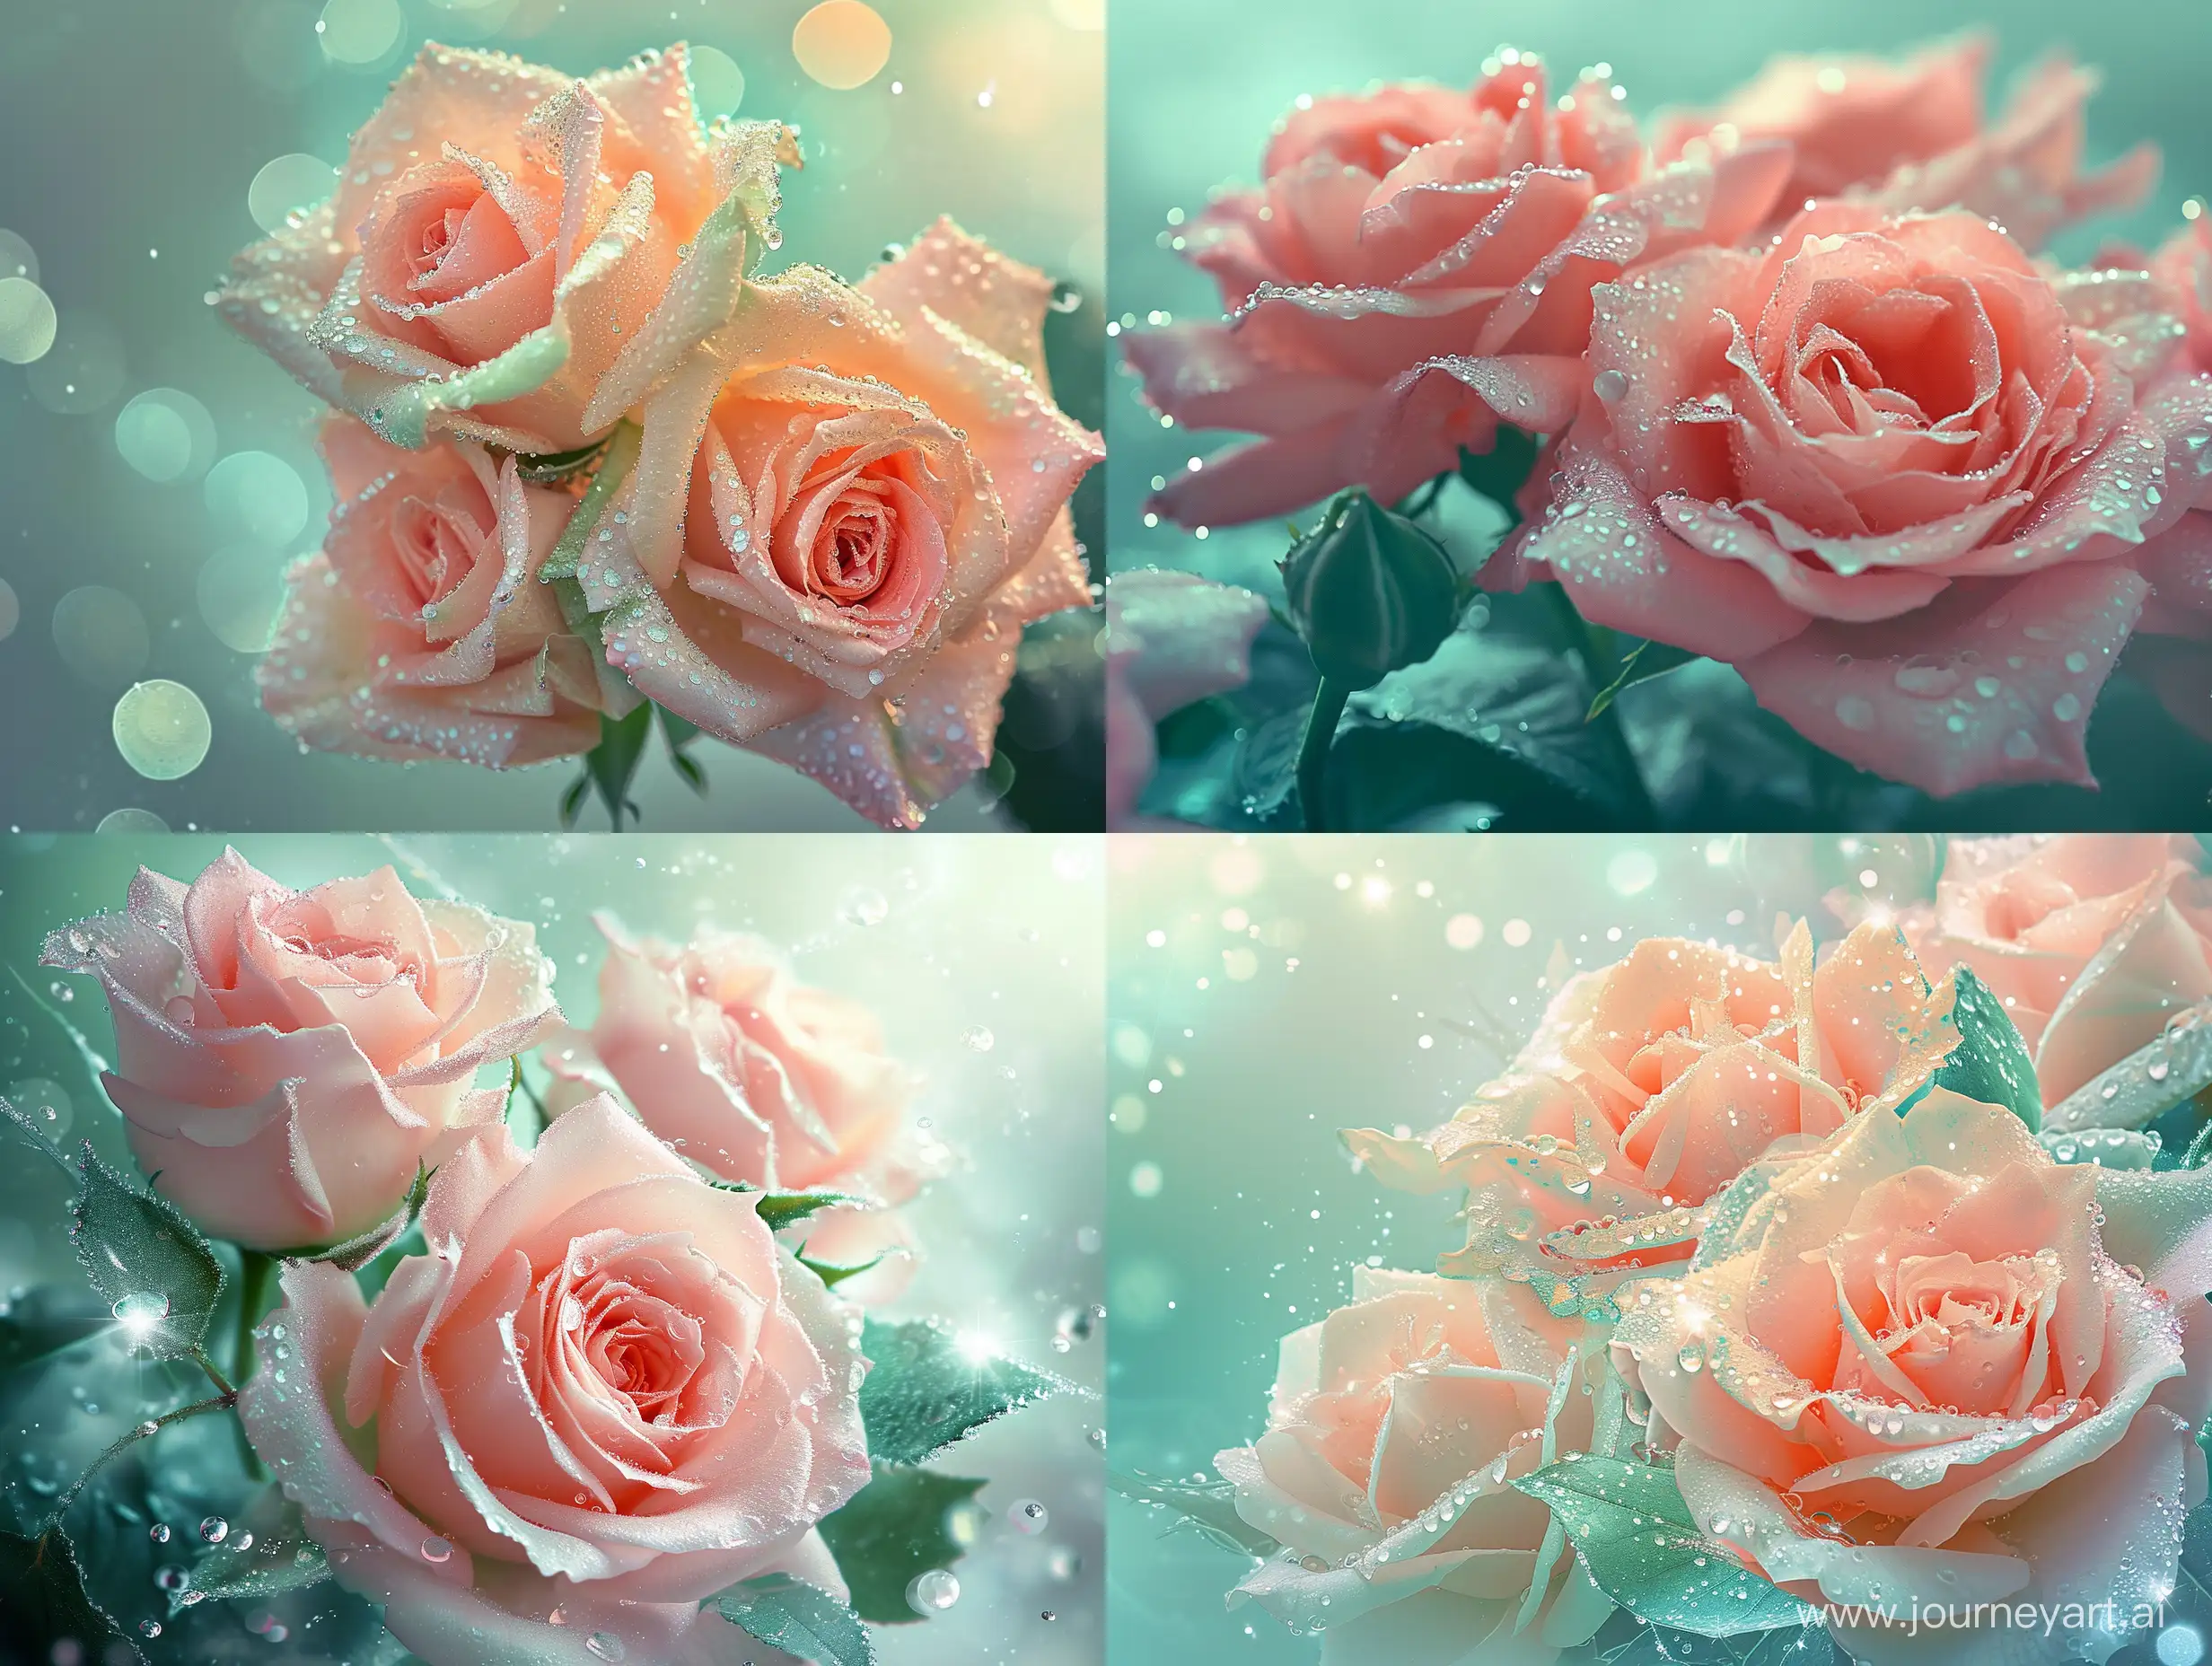 нежно-розово-мятный пышный букет роз, сложных,изумительных,волшебных нежных,цвет мята,искрящиеся капли росы,заря,волшебно,в пастельных прозрачных тонах,гипер реалистично,красивый